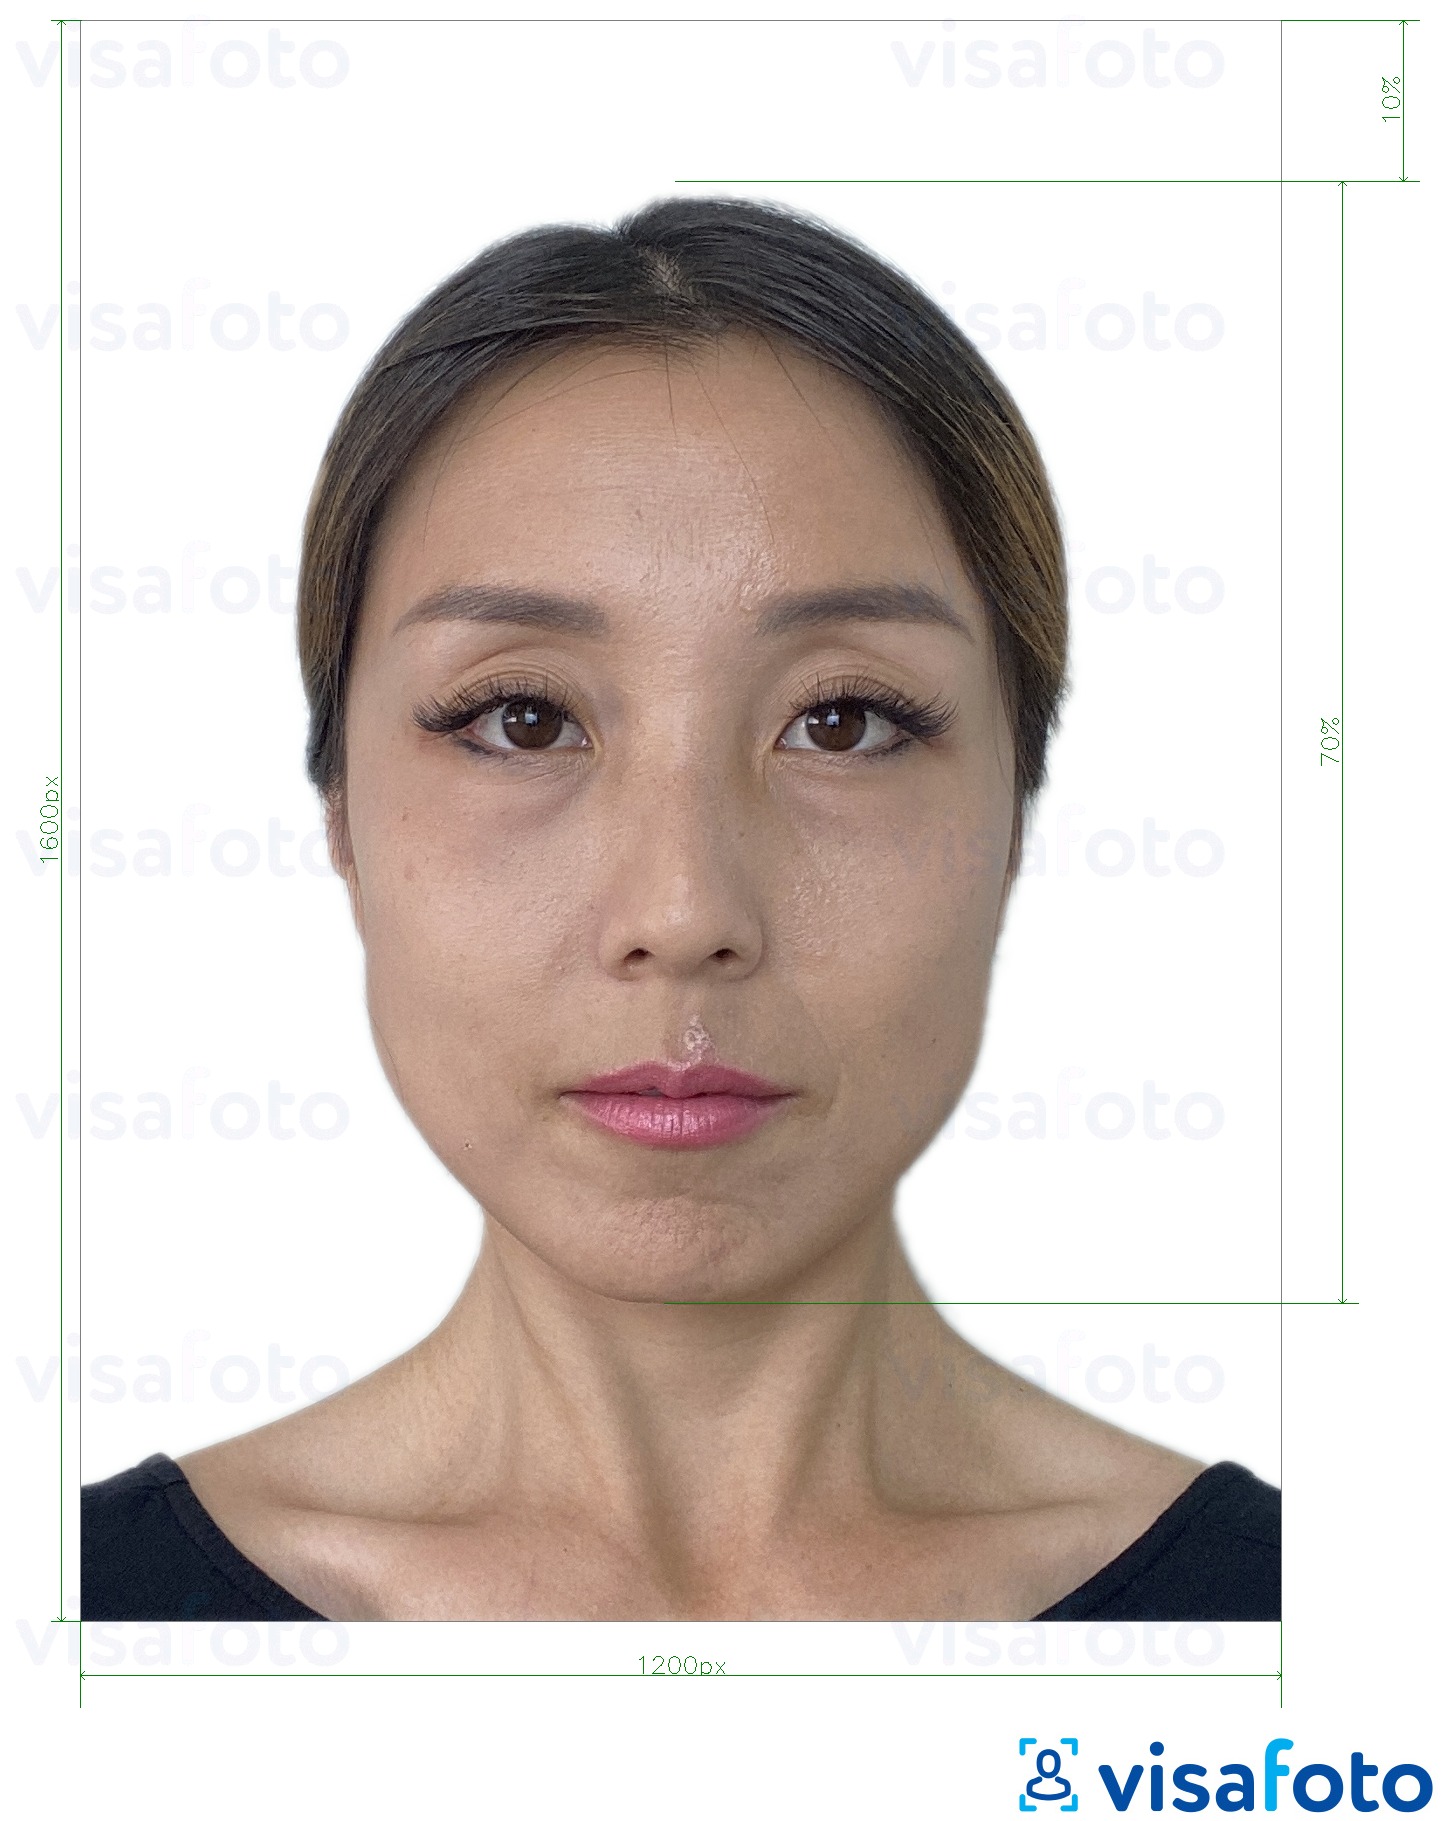 نمونه ی یک عکس برای هنگ کنگ آنلاین گذرنامه الکترونیکی 1200x1600 پیکسل با مشخصات دقیق